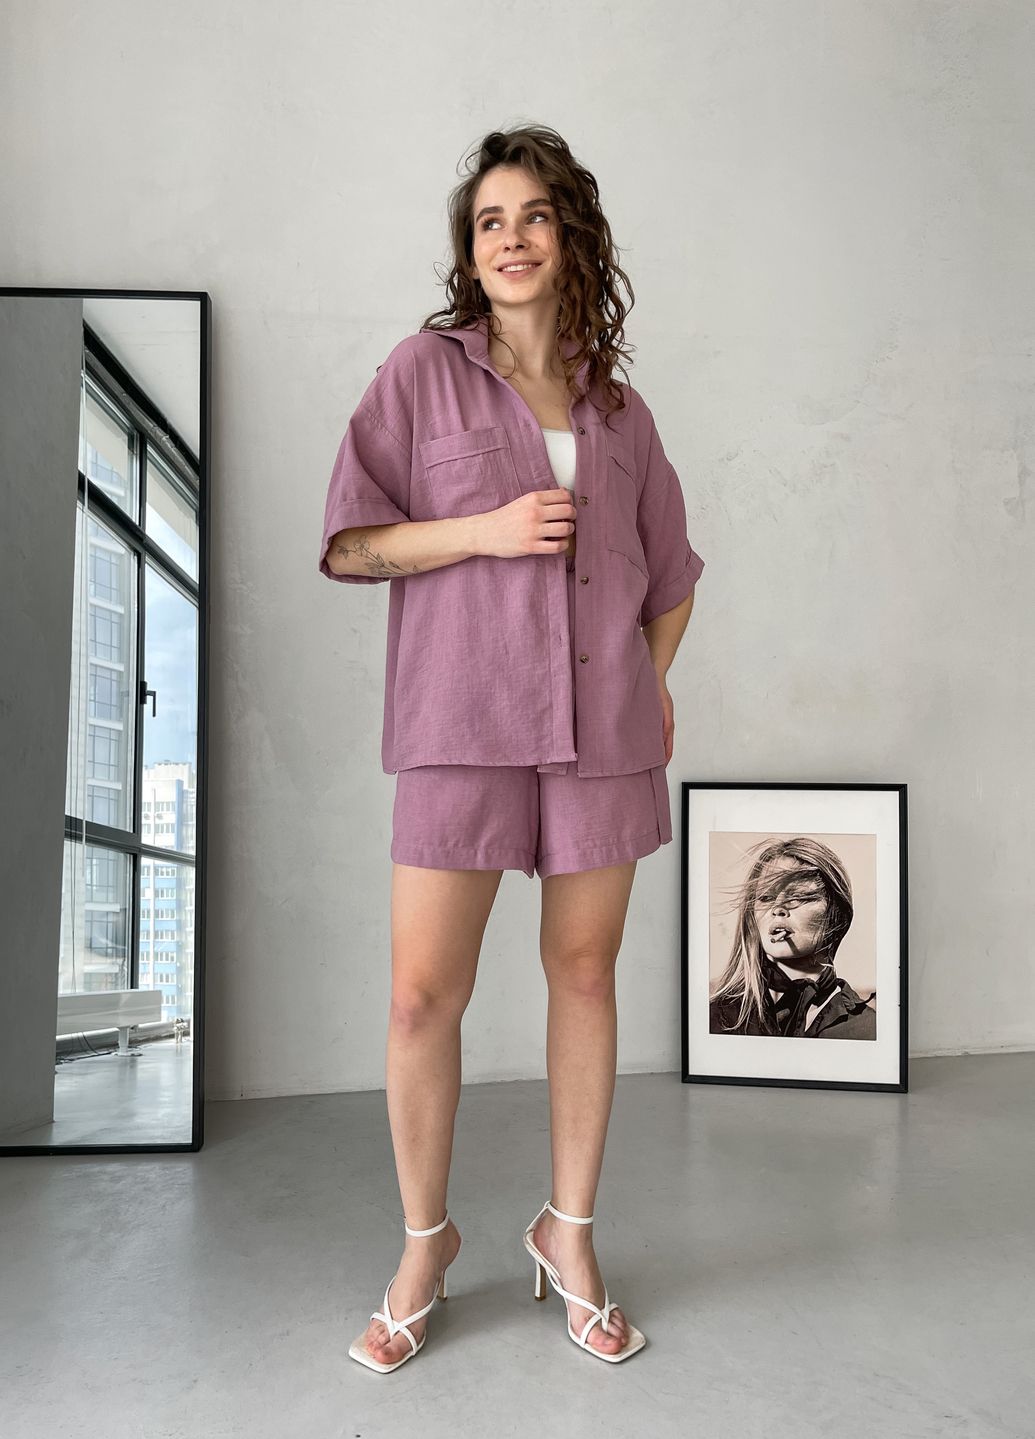 Купить Женская льняная рубашка с коротким рукавом розовая Merlini Фриули 200000144, размер 42-44 в интернет-магазине